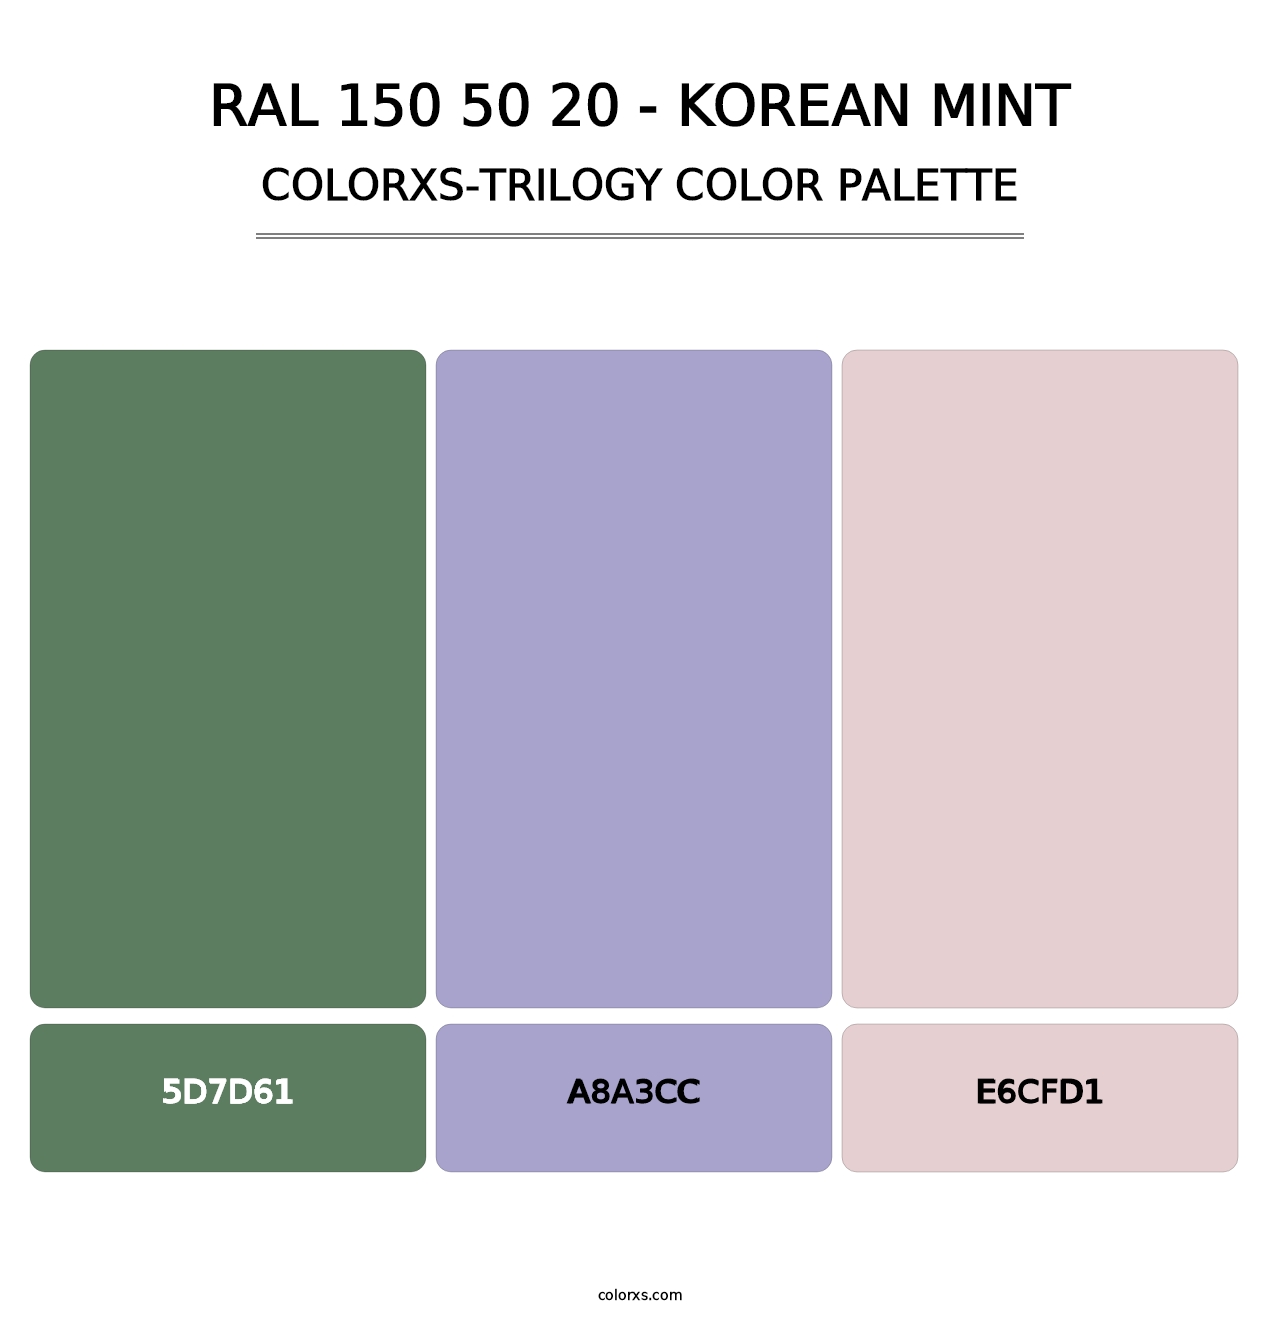 RAL 150 50 20 - Korean Mint - Colorxs Trilogy Palette